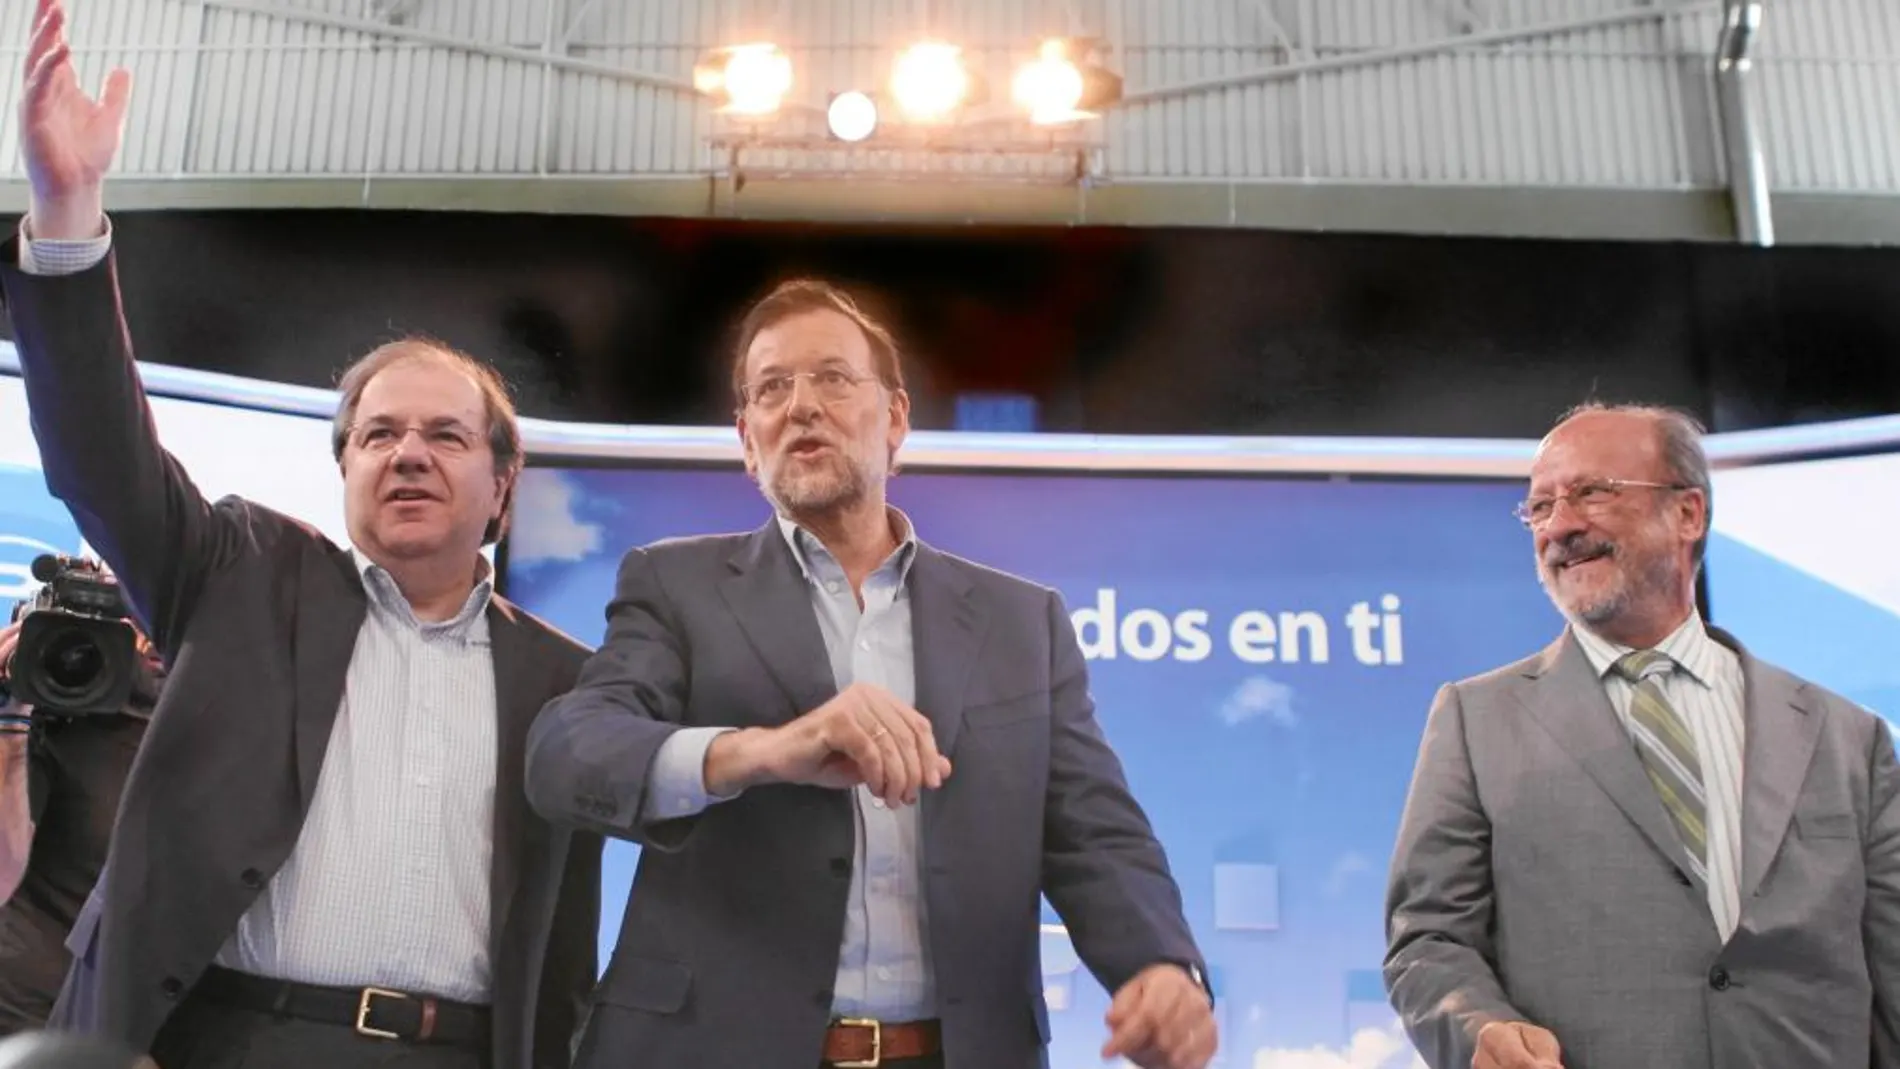 El presidente Juan Vicente Herrera, junto a Mariano Rajoy y el alcalde de Valladolid, Javier León de la Riva, en un acto político en la capital del Pisuerga